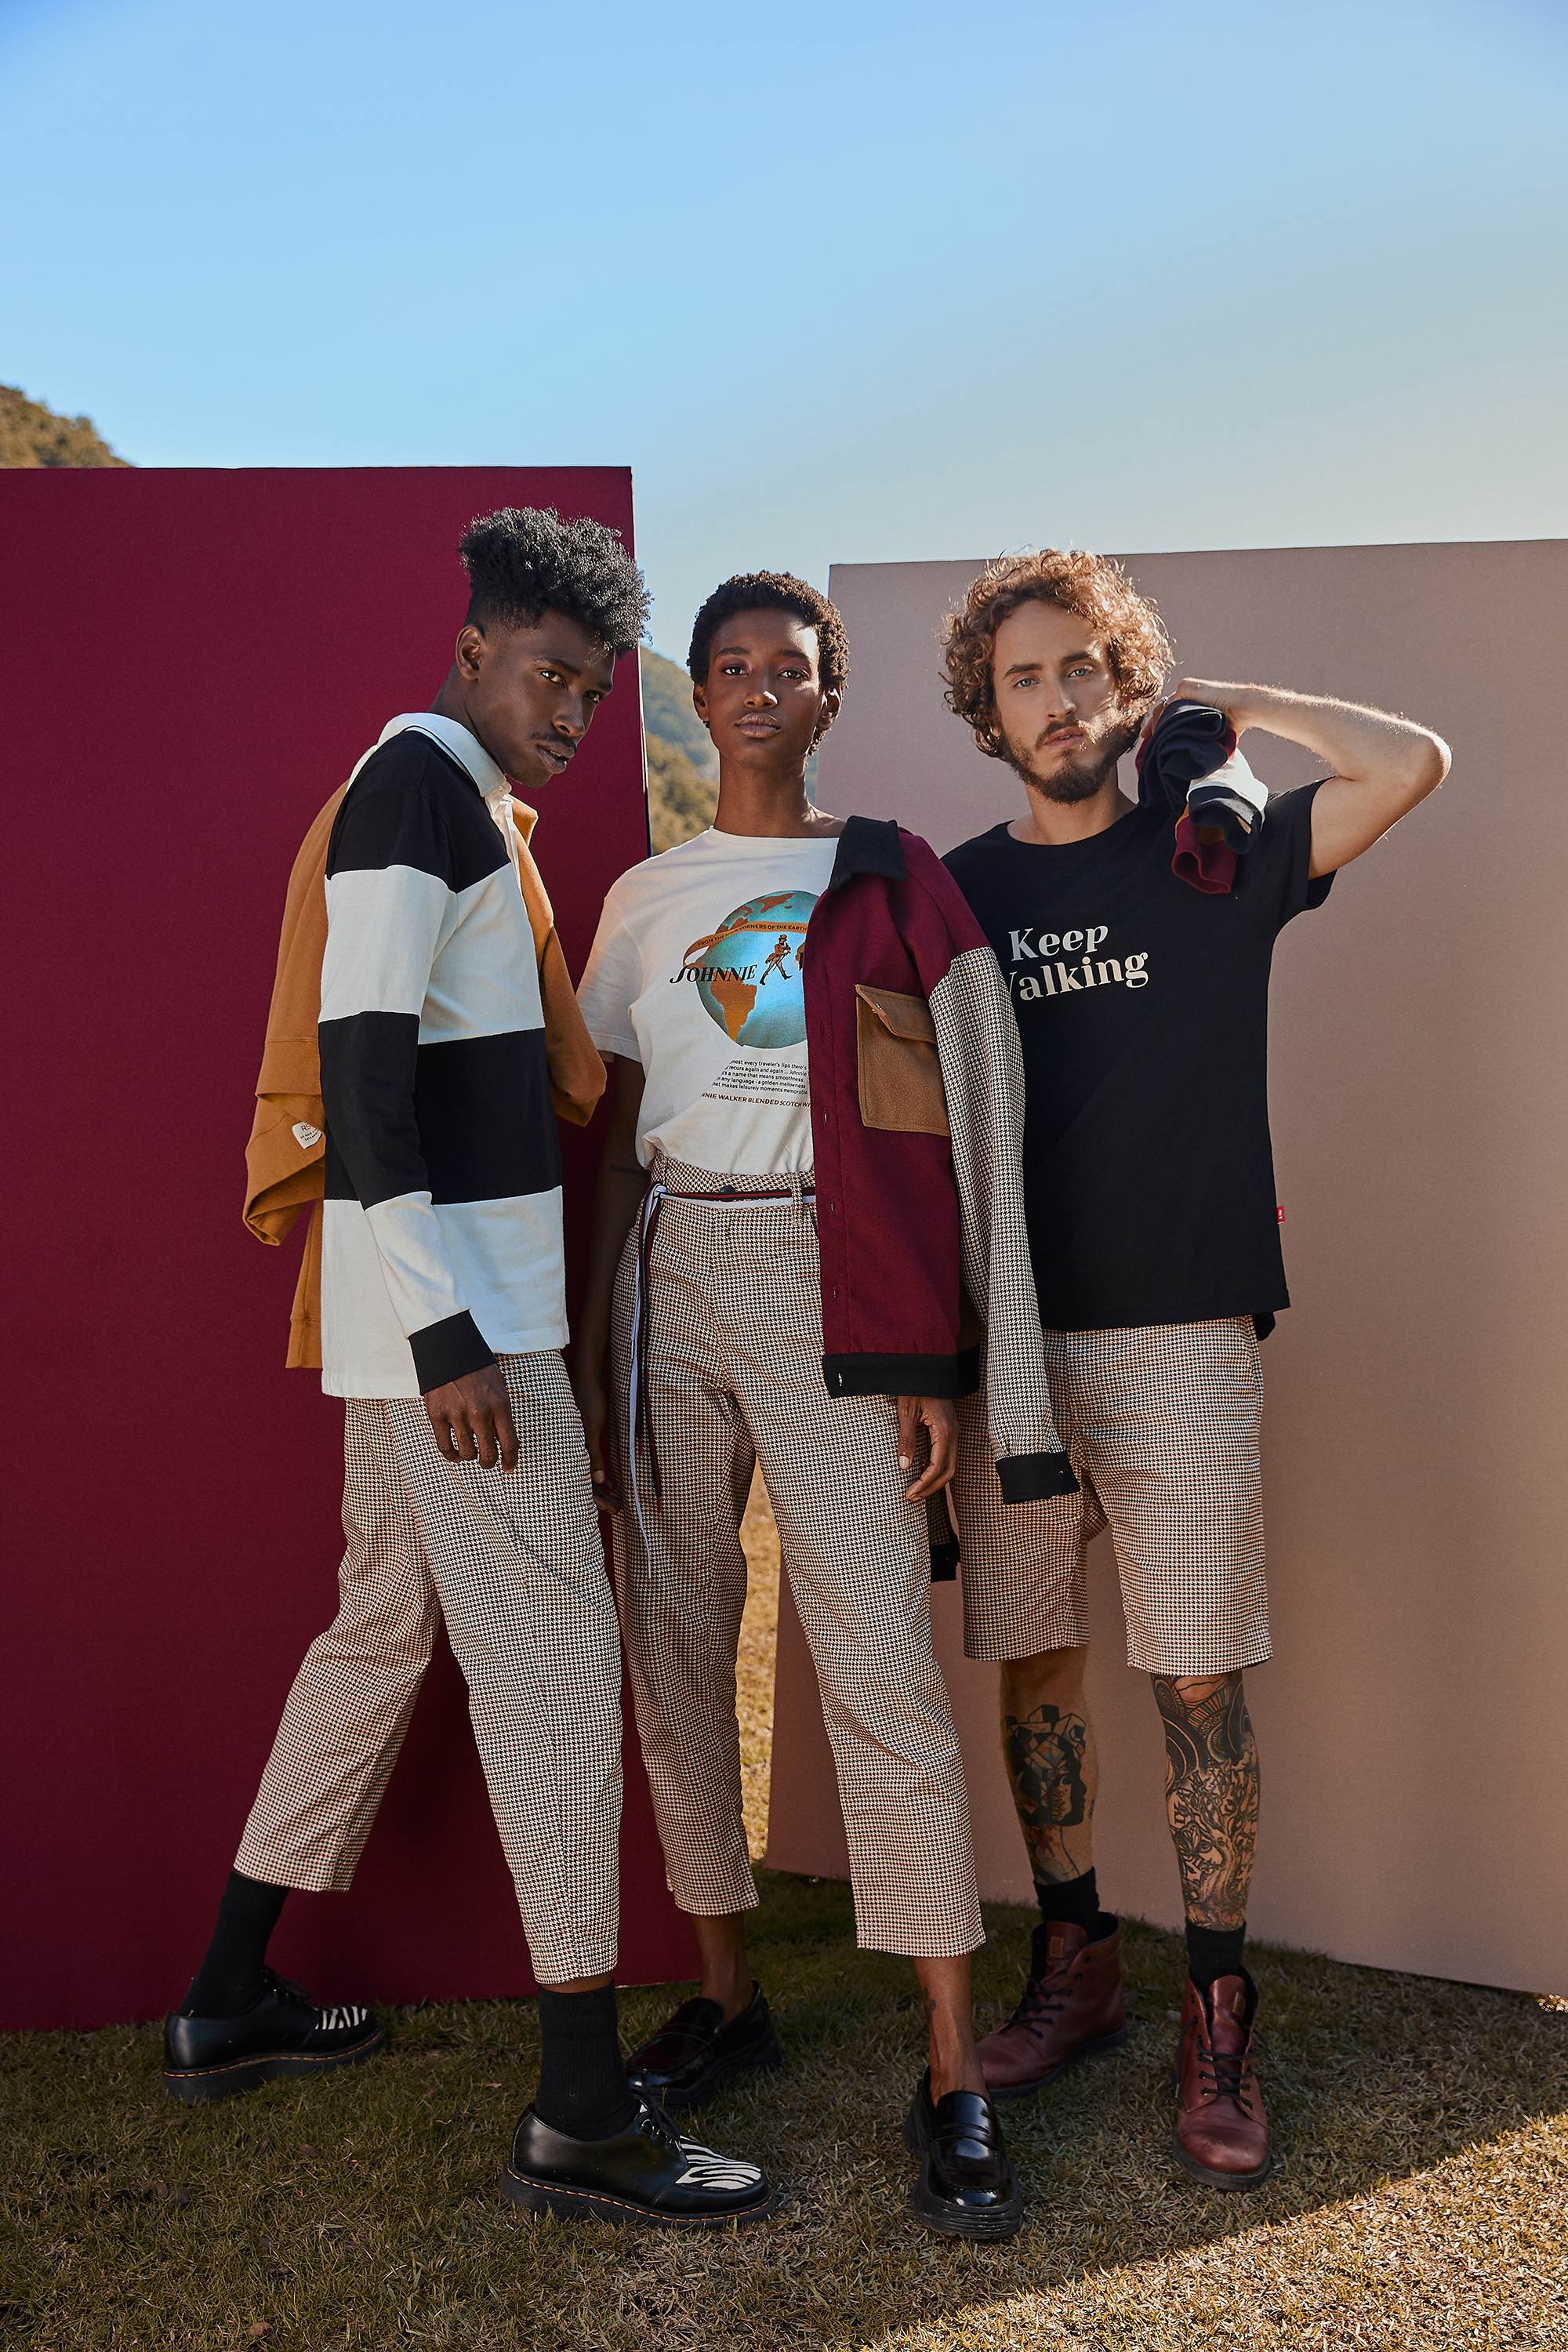 Três modelos em pé juntos, usando roupas de cores mostarda, vinho, branco e azul marinho